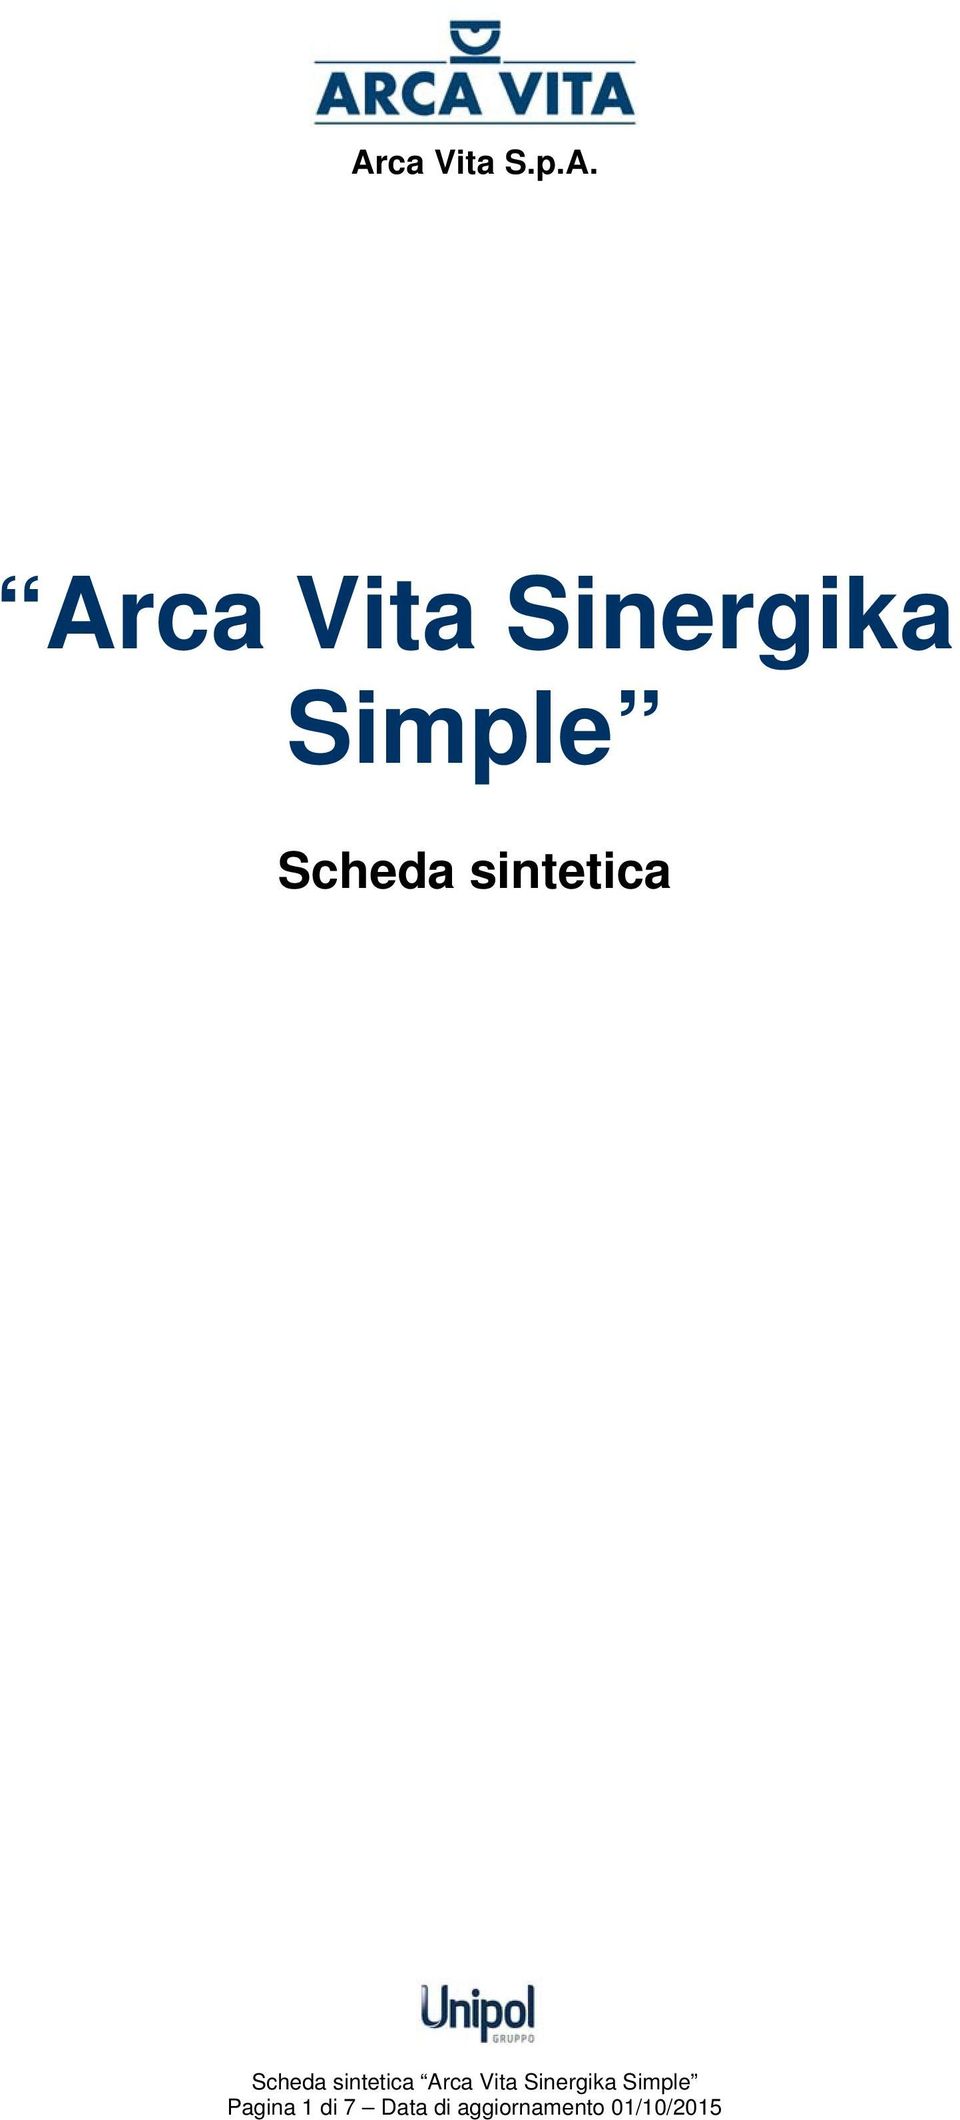 sintetica Arca Vita Sinergika Simple